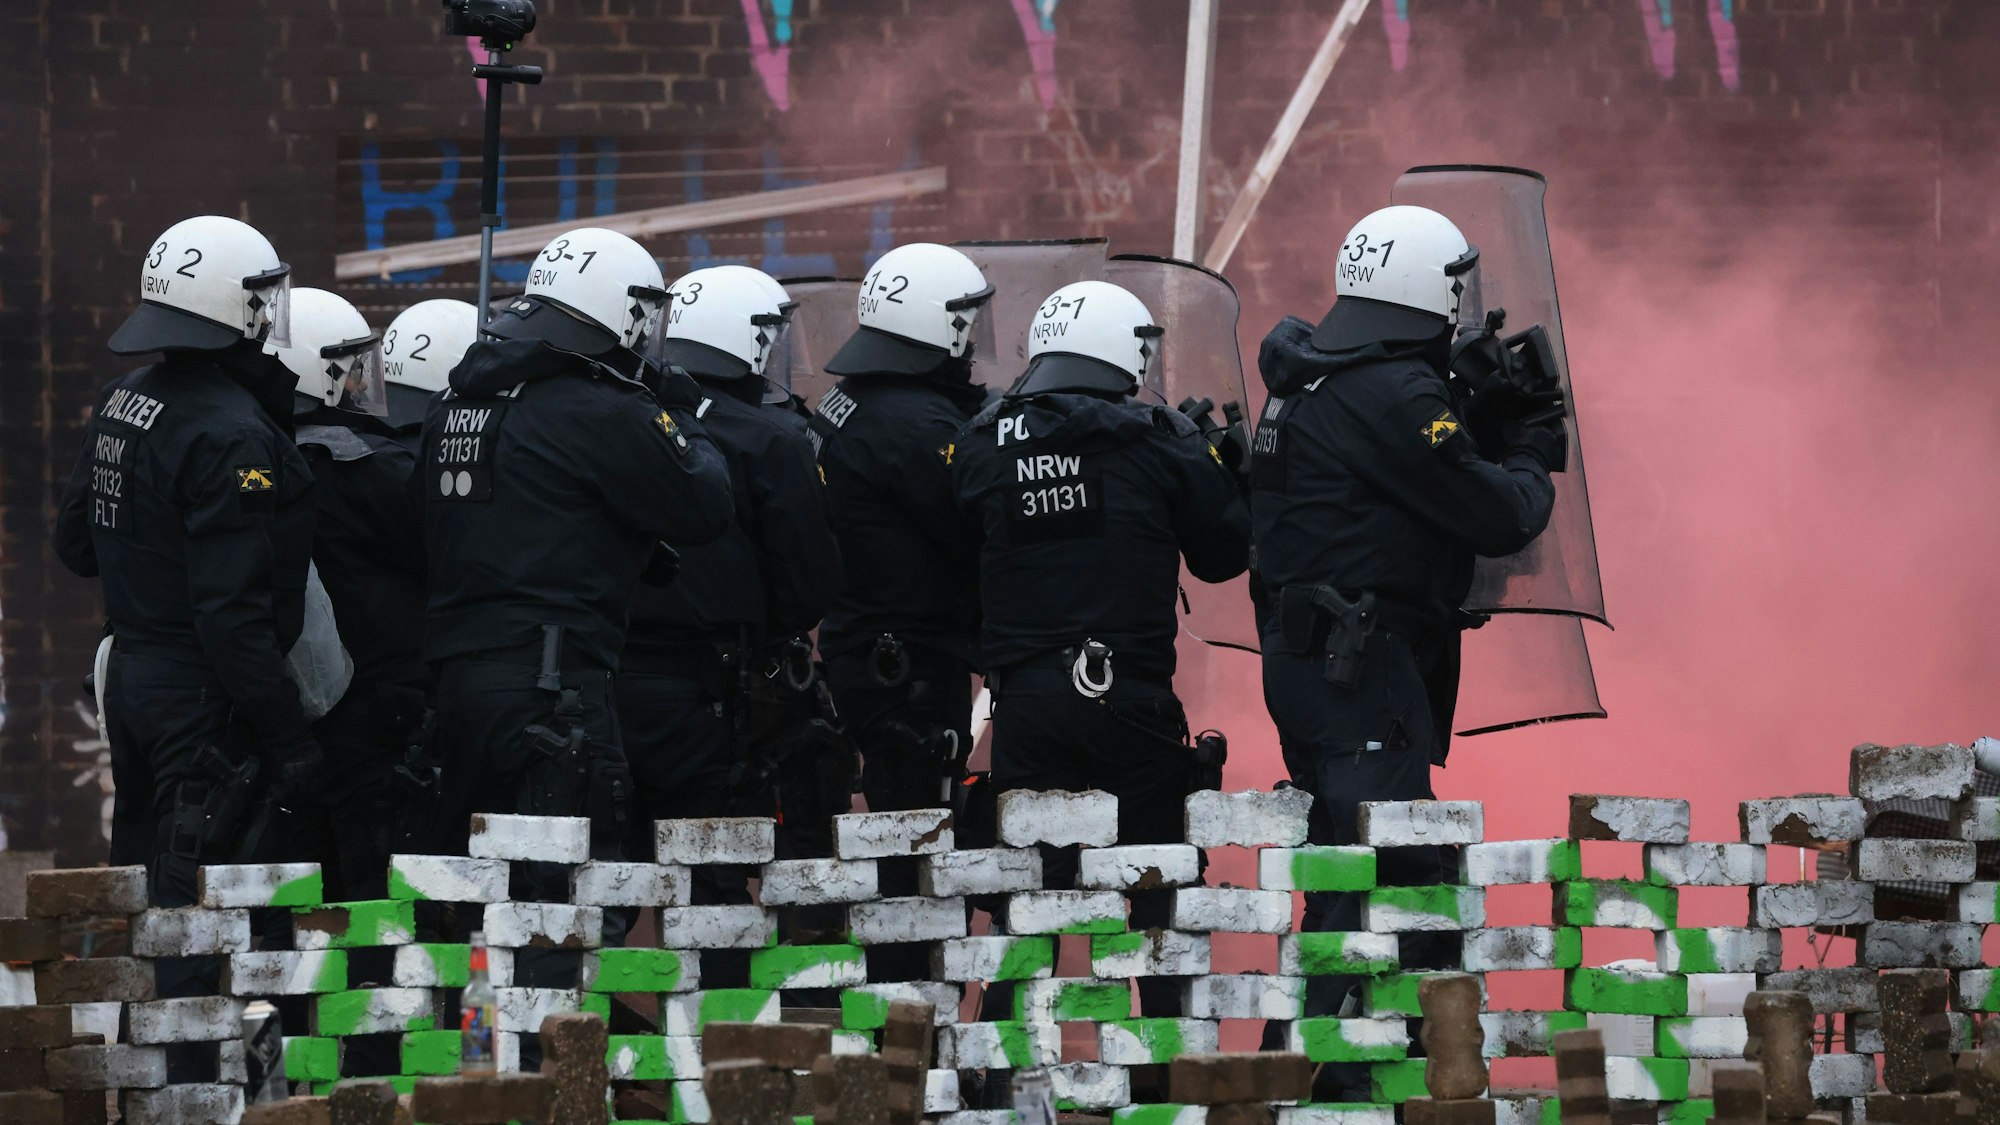 Polizisten rücken in den von Klimaaktivisten besetzten Braunkohleort Lützerath vor.